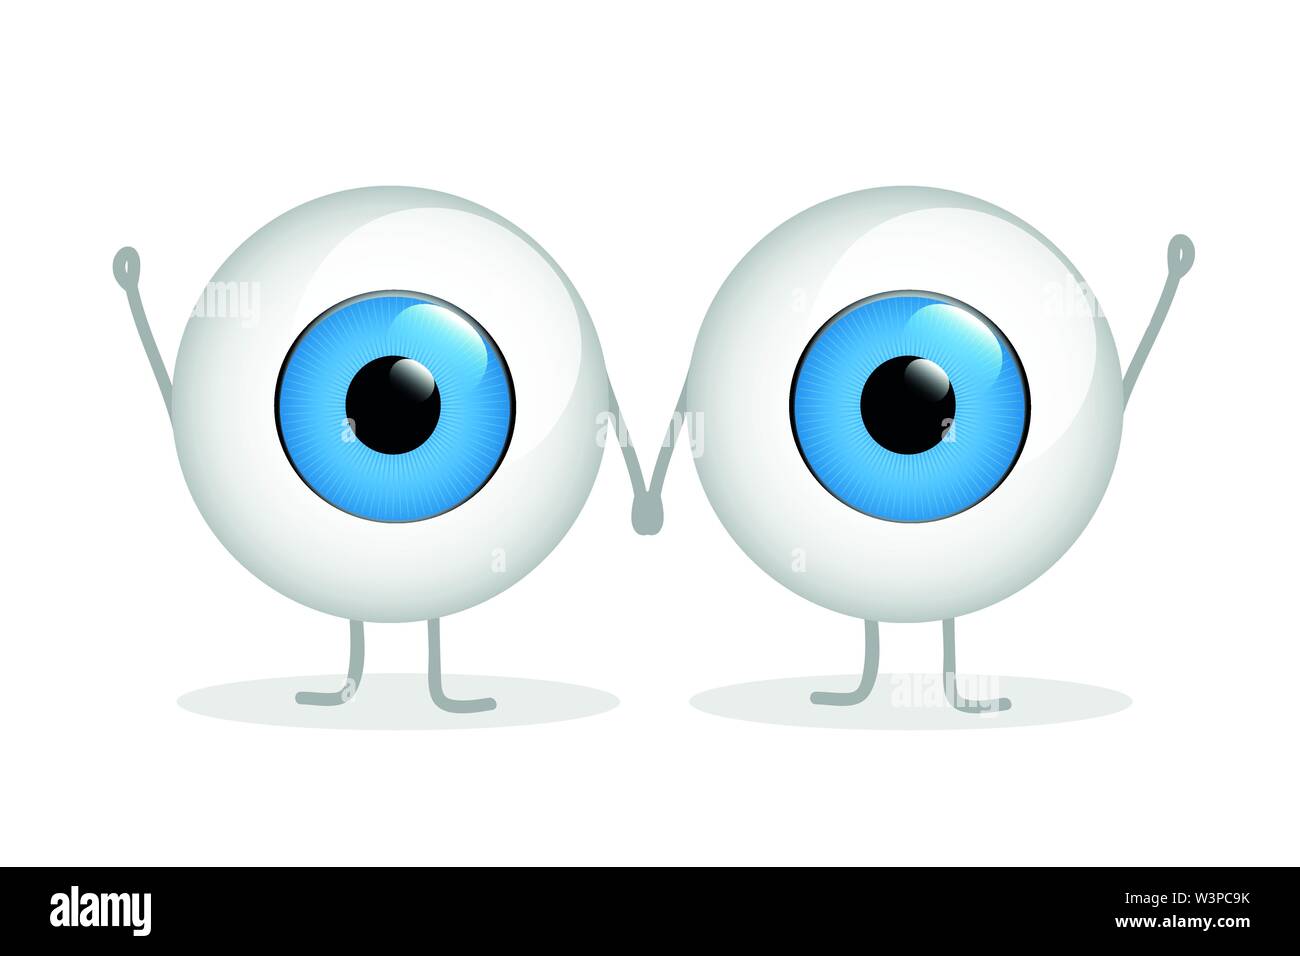 Deux yeux bleus heureux holding hands isolated on white background vector illustration EPS10 Illustration de Vecteur